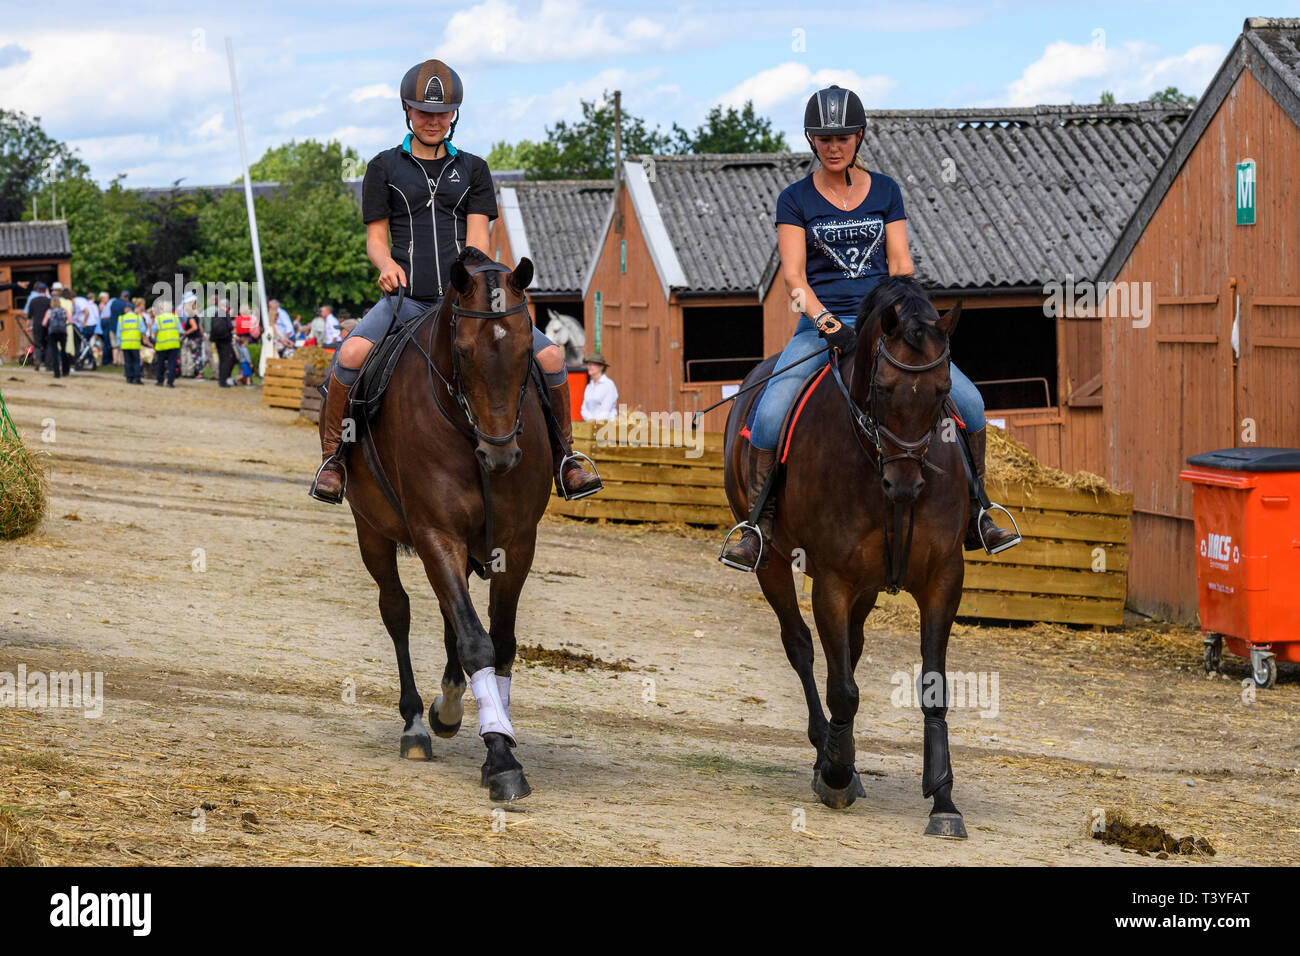 Les entrants en classe équine équitation portant des chapeaux, monter des chevaux dans la cour stable, l'échauffement avant la compétition - Great Yorkshire Show, England, UK Banque D'Images